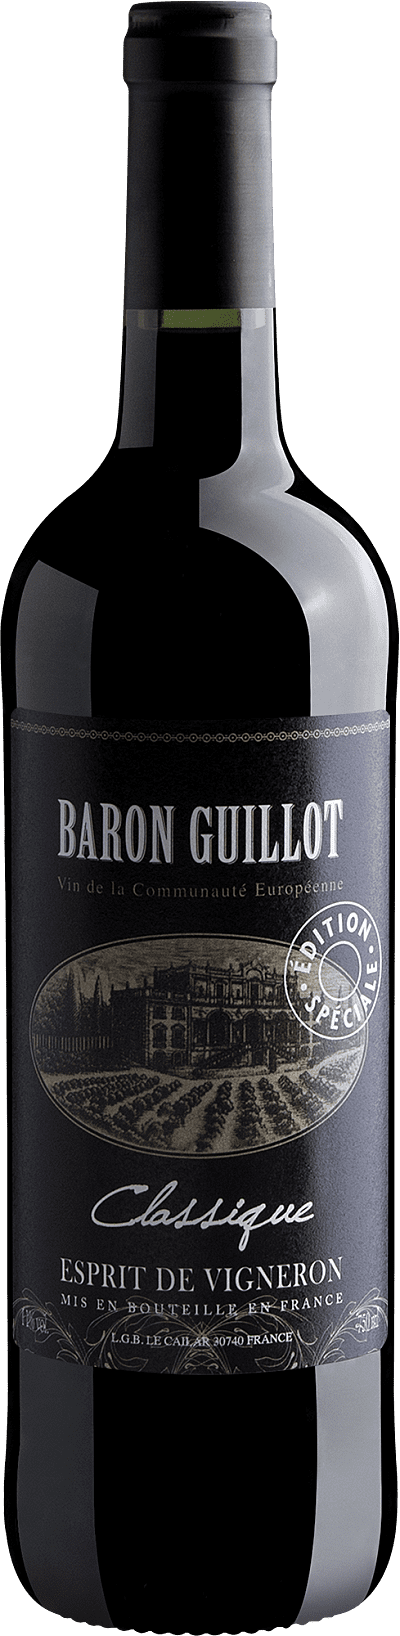 Baron Guillot Classique Esprit de Vigneron Édition Spéciale